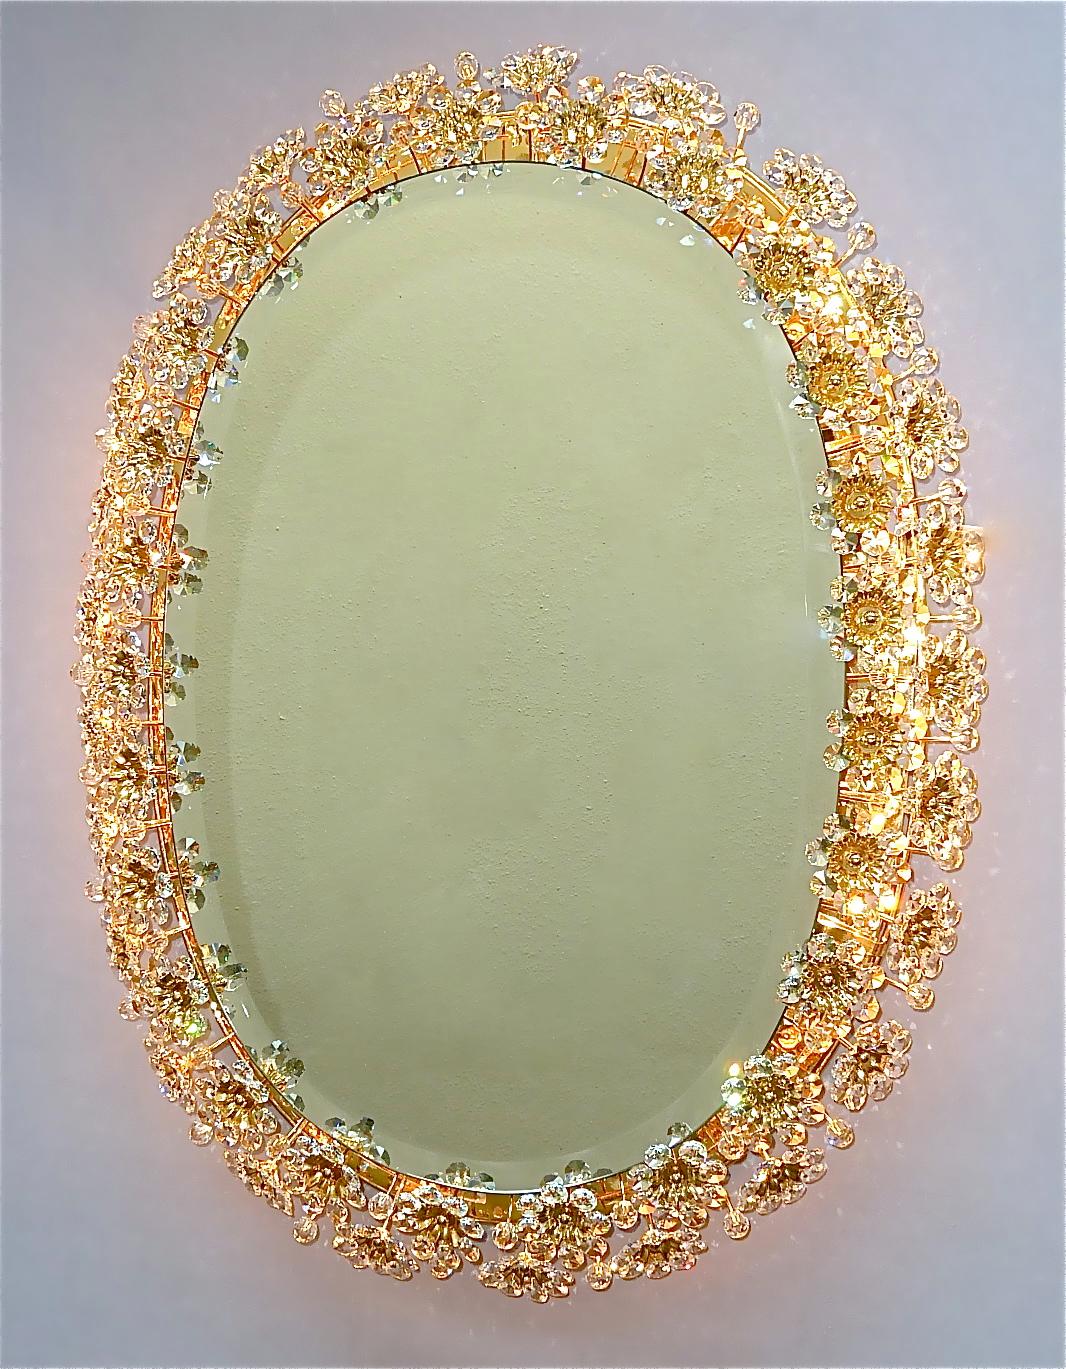 Großer ovaler Blumenstrauß vergoldetes Messing-Metall-Kristallglas hinterleuchteter Wandspiegel von Palwa, Deutschland ca. 1960-1970. Der Rahmen hat viele schöne handgeschliffene, facettierte Kristalle in Form von Blumen oder Blüten, die wie